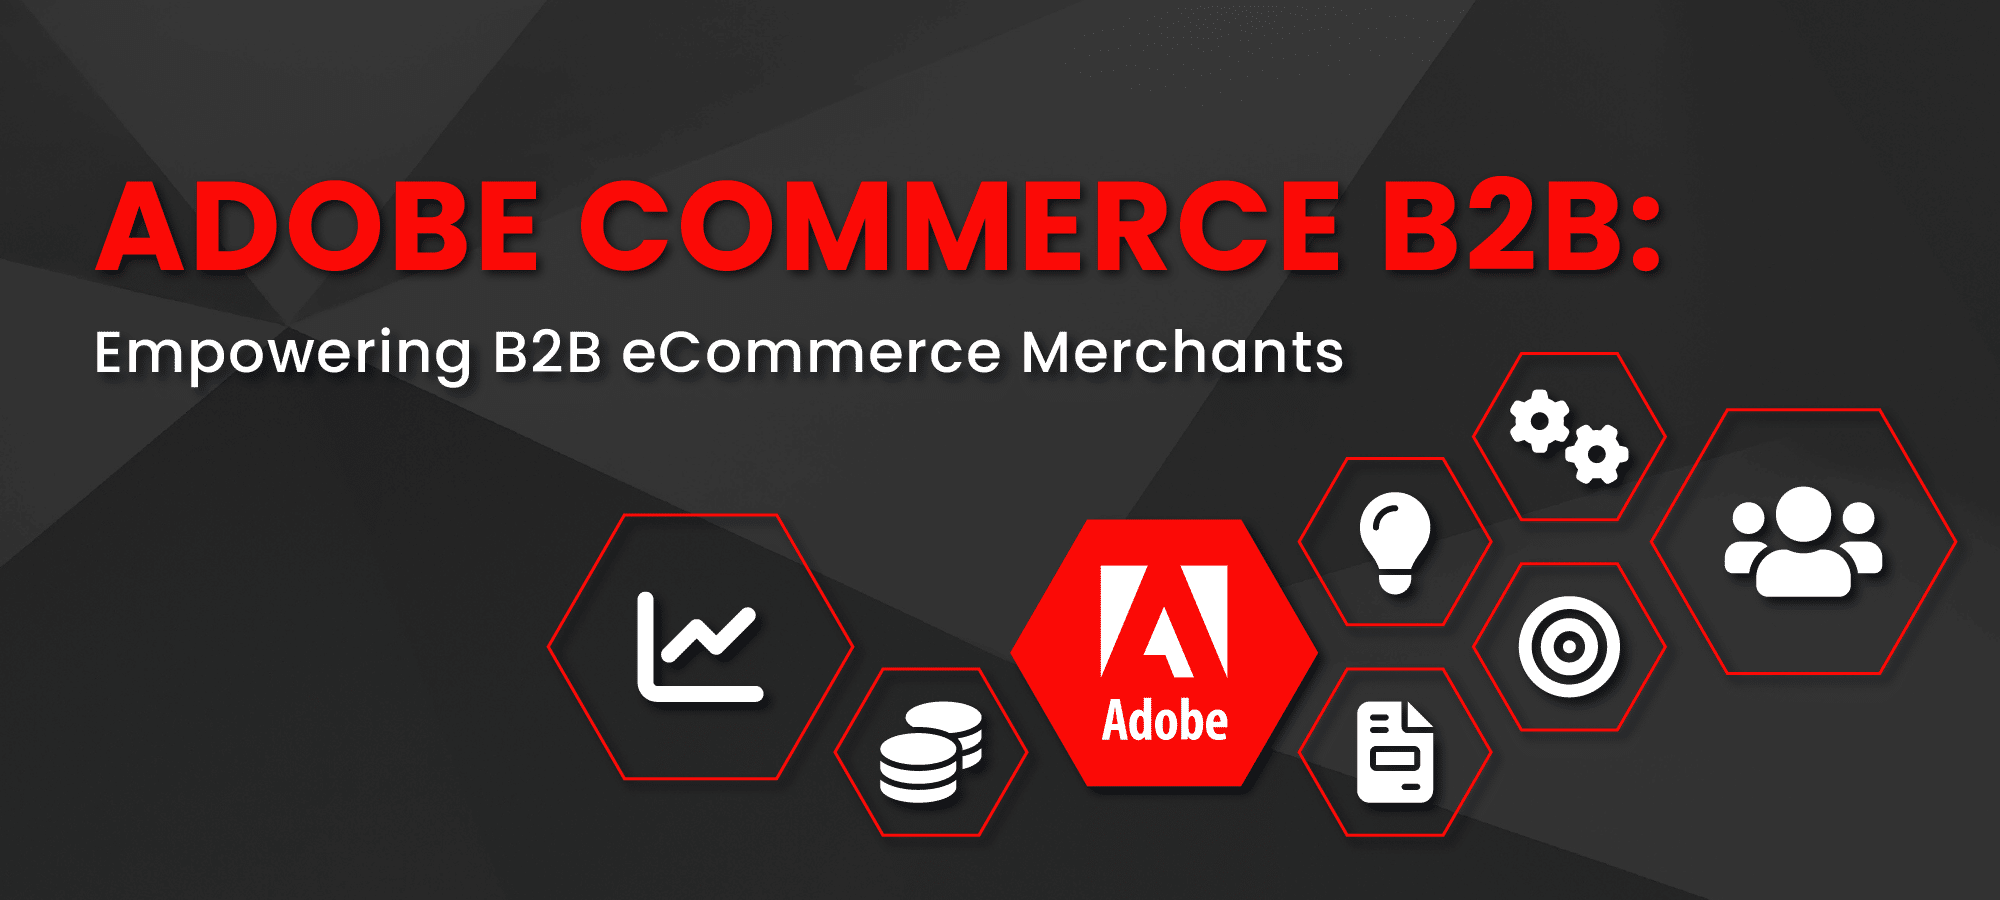 Adobe Commerce B2B2